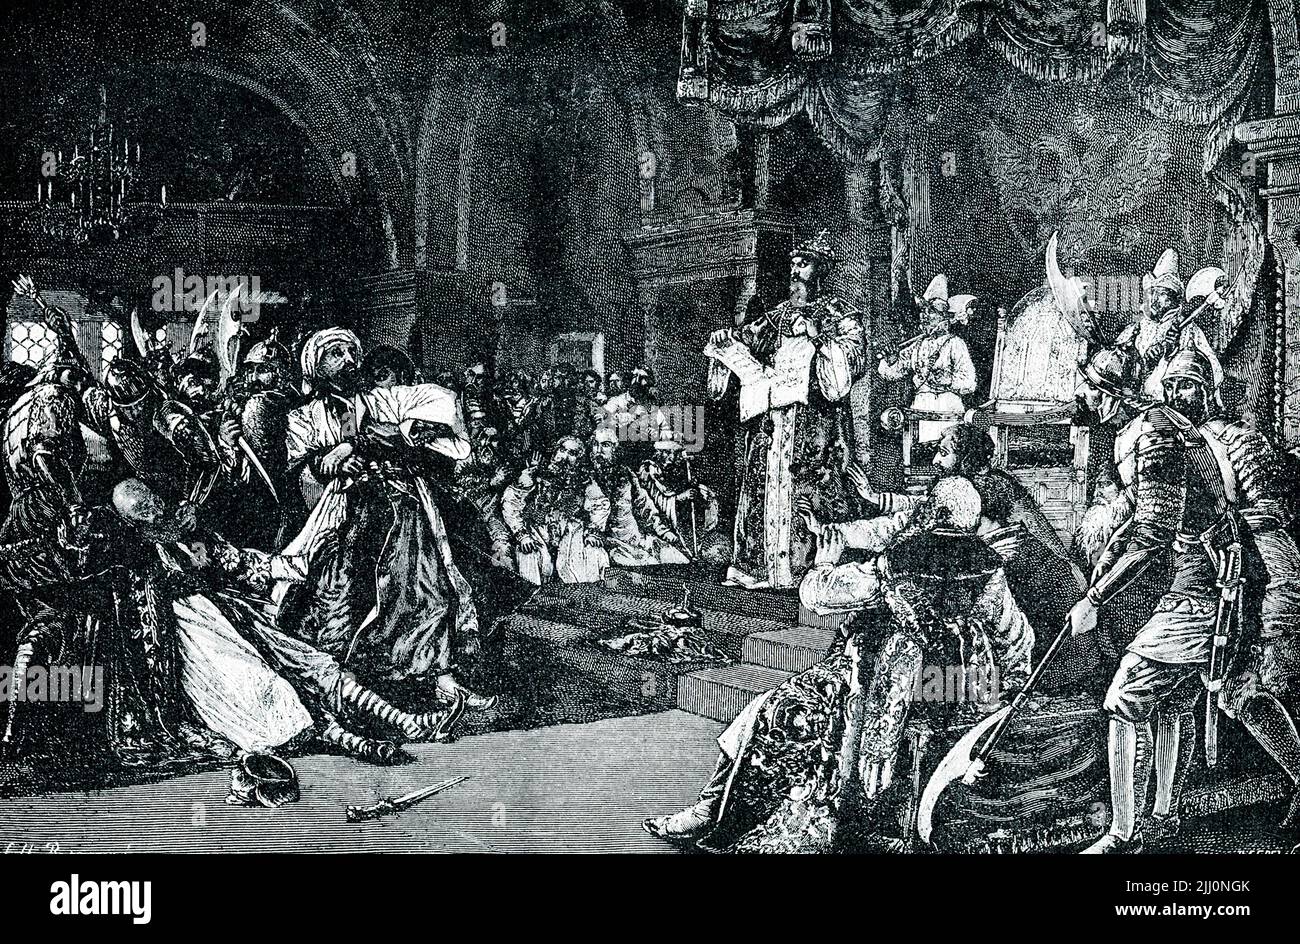 La légende de 1906 se lit comme suit : « IVAN III DÉCHIRANT LA LETTRE DU TARTRE KHAN.—ce n'est qu'un siècle après Di Donski que les Tartars ont finalement été chassés de Russie. Un autre grand-duc de Moscou, Ivan le Grand a pimé la lettre exigeant un hommage, soumis les ambassadeurs à toute indimité et libéré la Russie à jamais de la malédiction du Tartar. » Ivan III (1440-1505), appelé Ivan le Grand, fut grand duc de Moscou de 1462 à 1505. Il a achevé l'unification des terres russes, et son règne marque le début de la Russie moscovite. Bien que le Mongol Horde était déjà affaibli par ce TI Banque D'Images